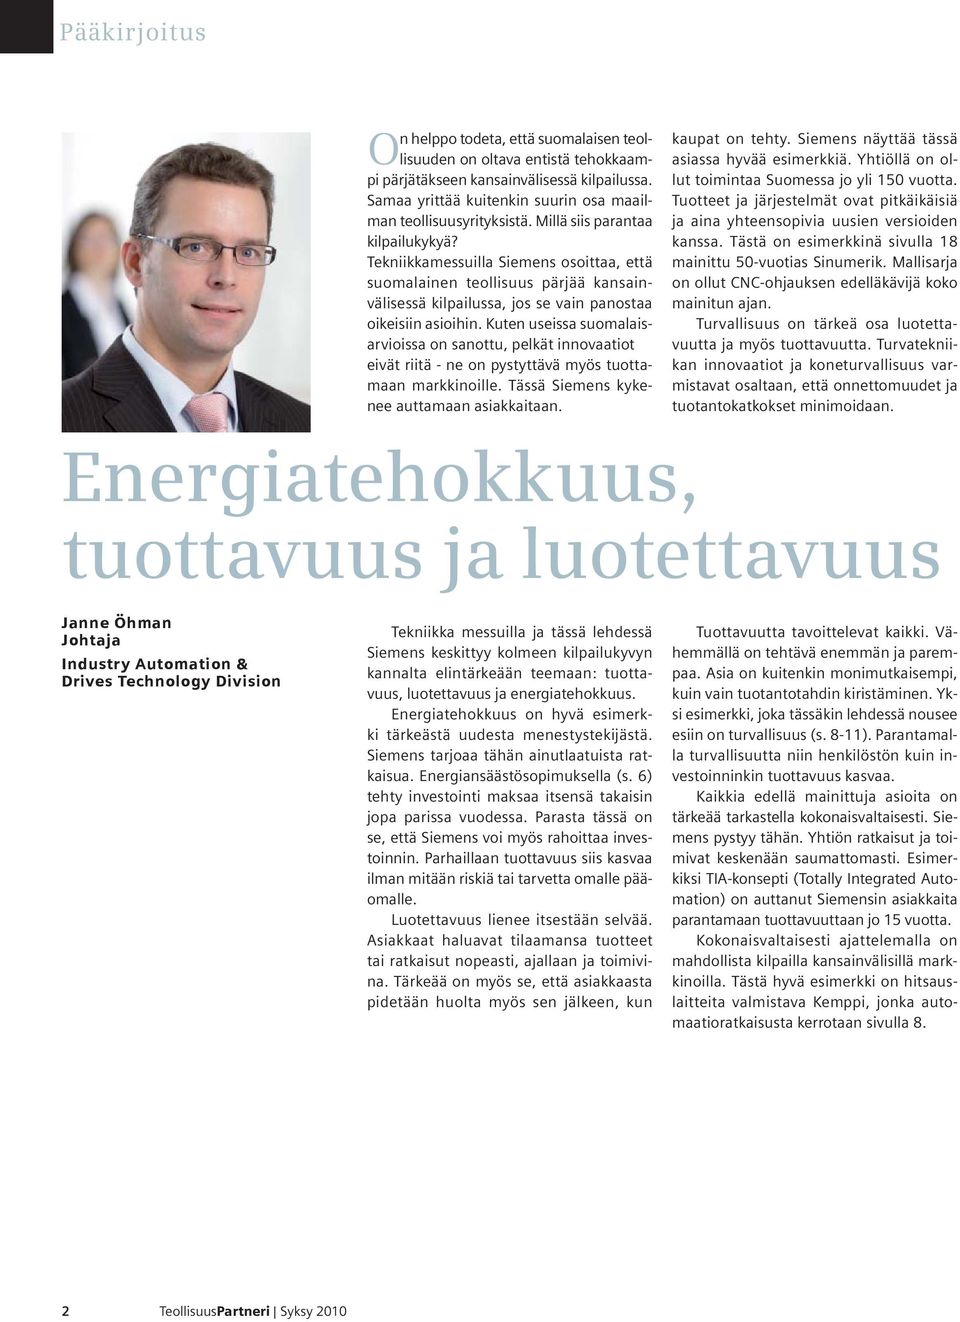 Kuten useissa suomalaisarvioissa on sanottu, pelkät innovaatiot eivät riitä - ne on pystyttävä myös tuottamaan markkinoille. Tässä Siemens kykenee auttamaan asiakkaitaan. kaupat on tehty.